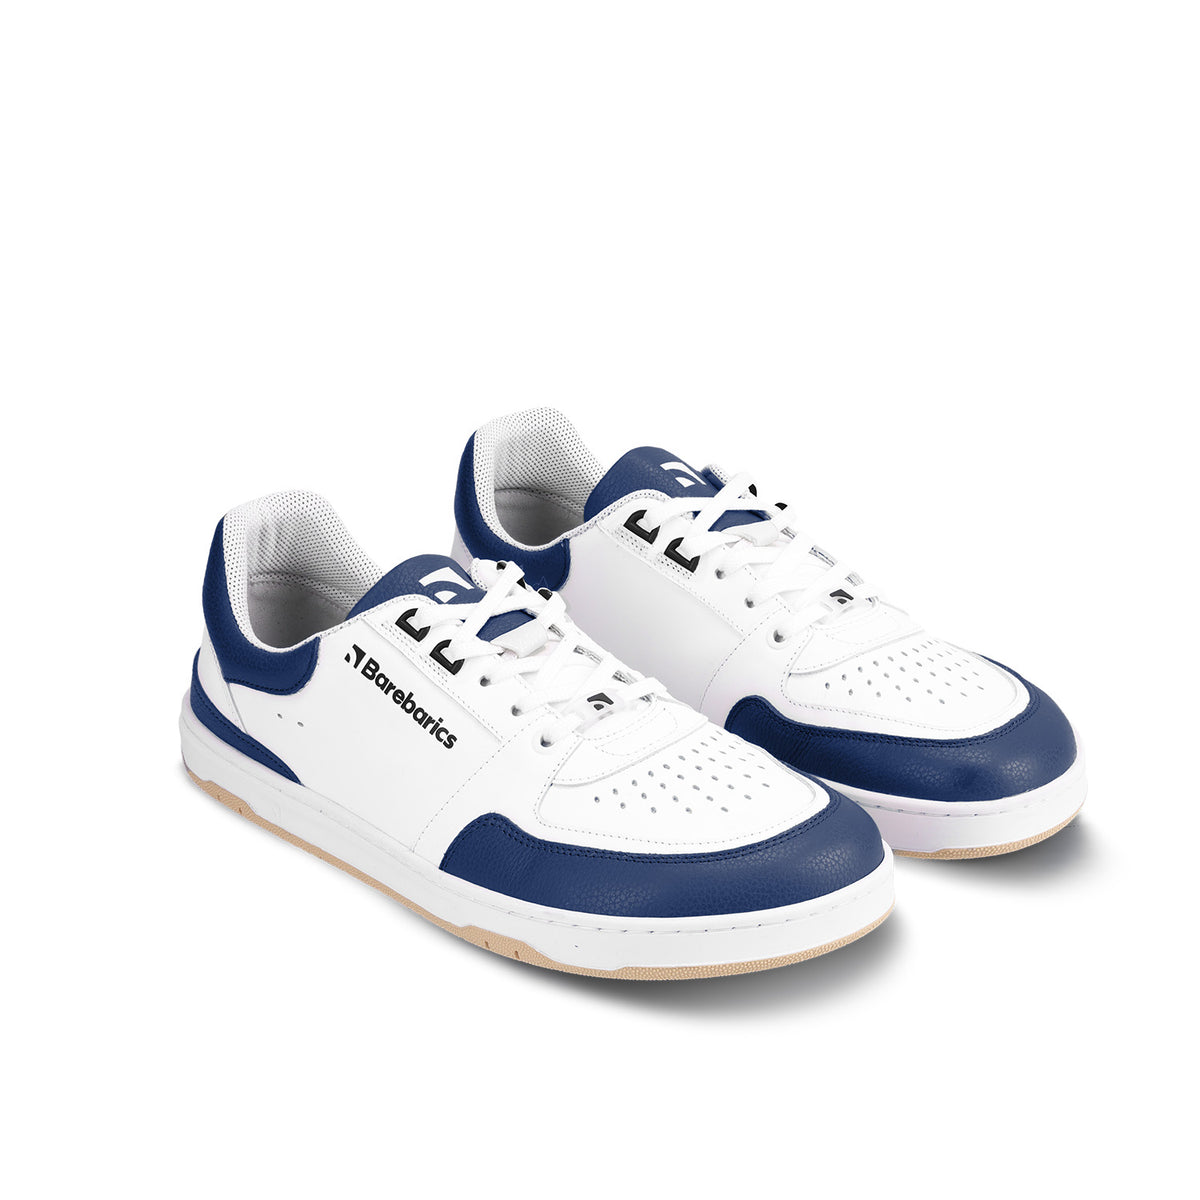 Barefoot Sneakers Barebarics Wave - White & Dark Blue 4  - OzBarefoot